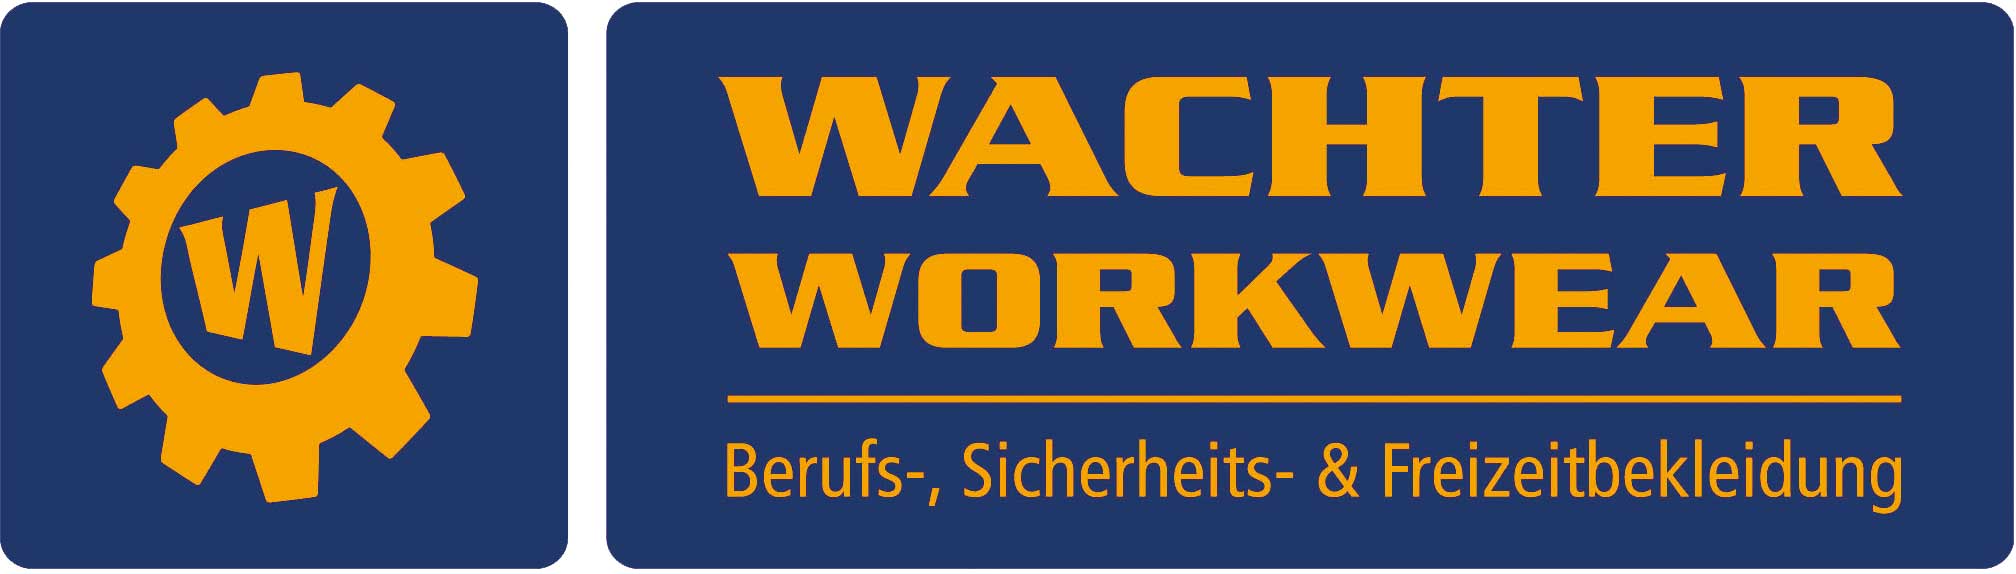 WACHTER WORKWEAR GmbH